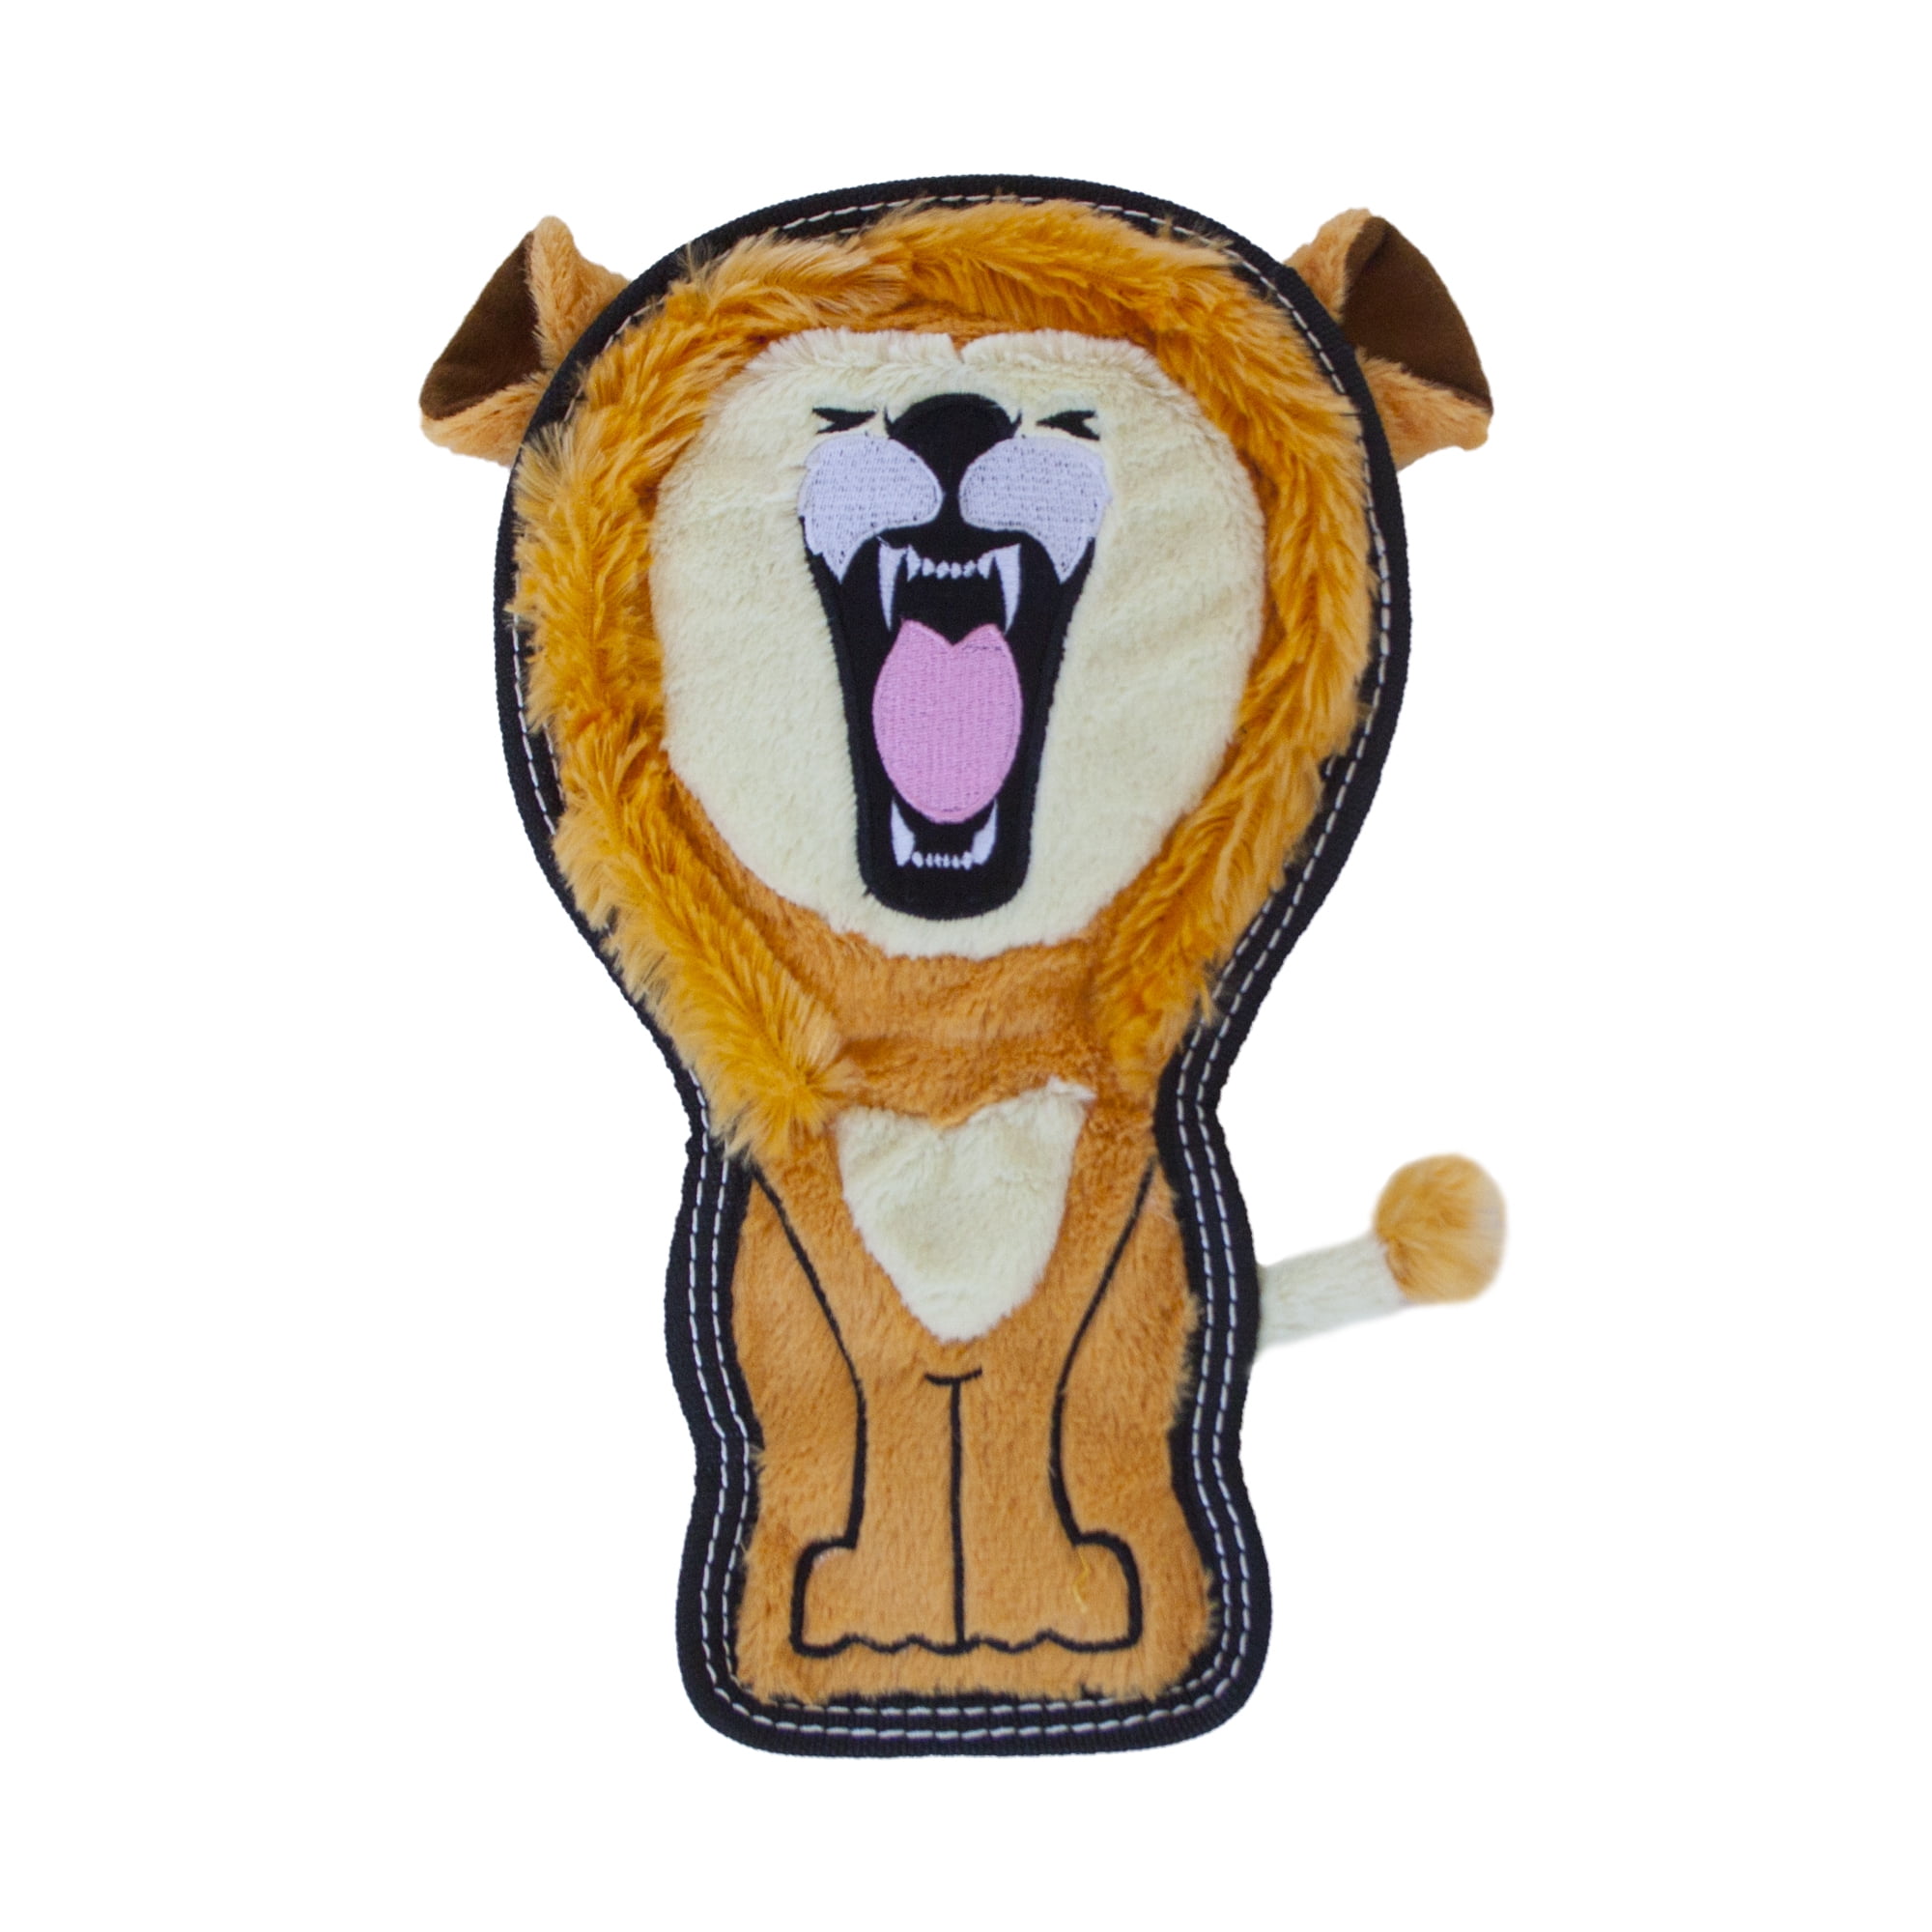 Outward Hound Xtreme Seamz Leopard Dog Toy - Tan - M : Target